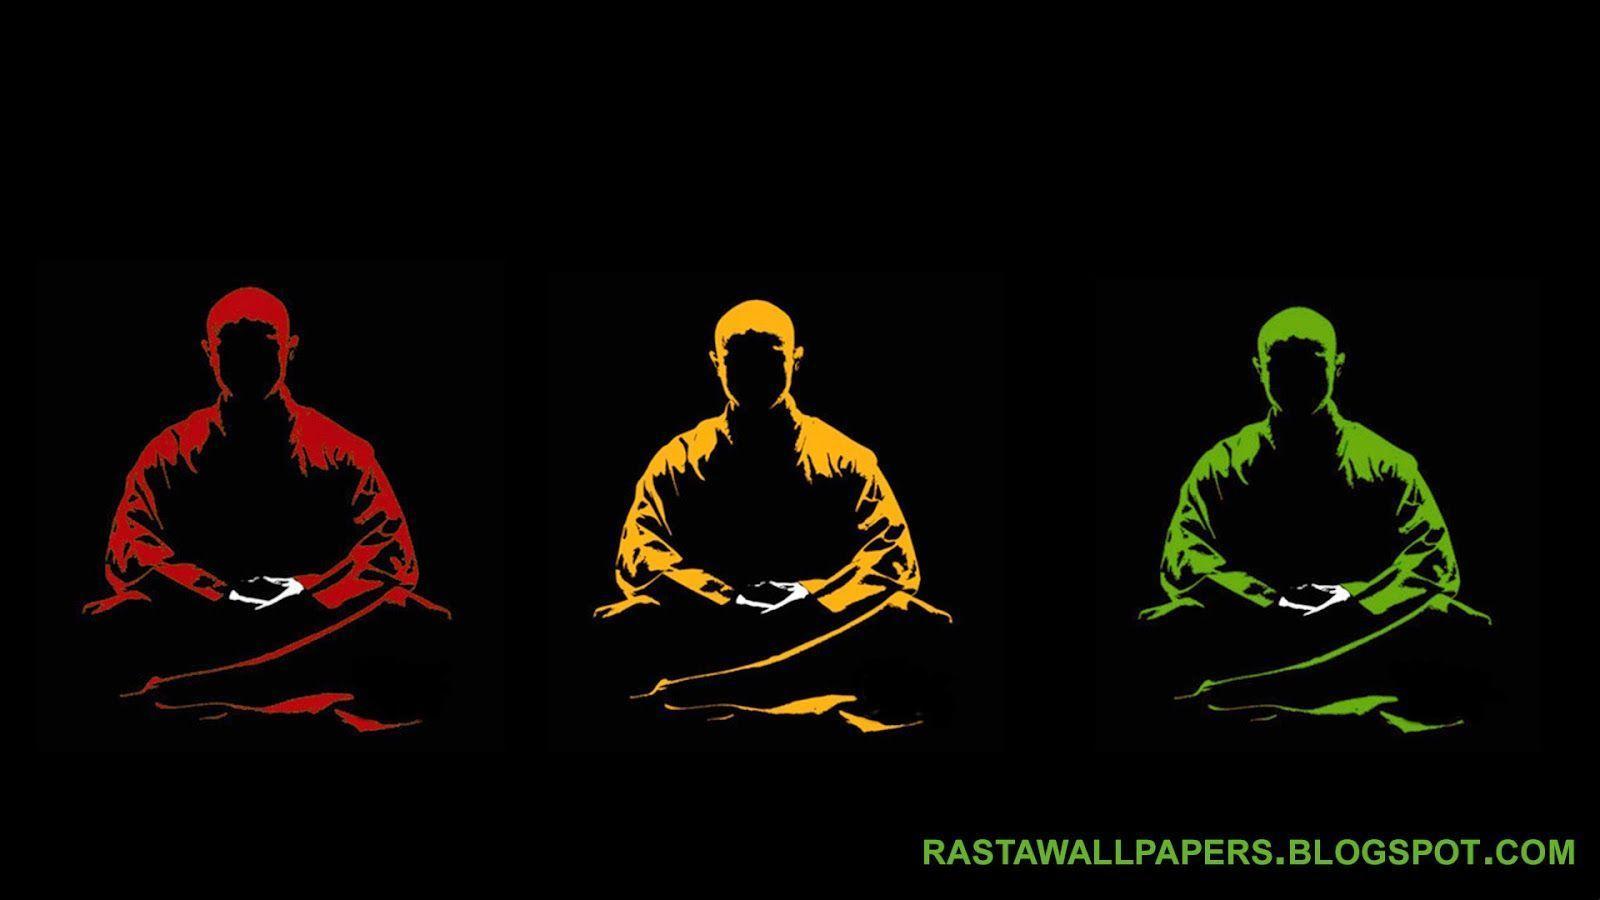 Rasta Wallpaper 2016 - Buddhist Monk Art , HD Wallpaper & Backgrounds